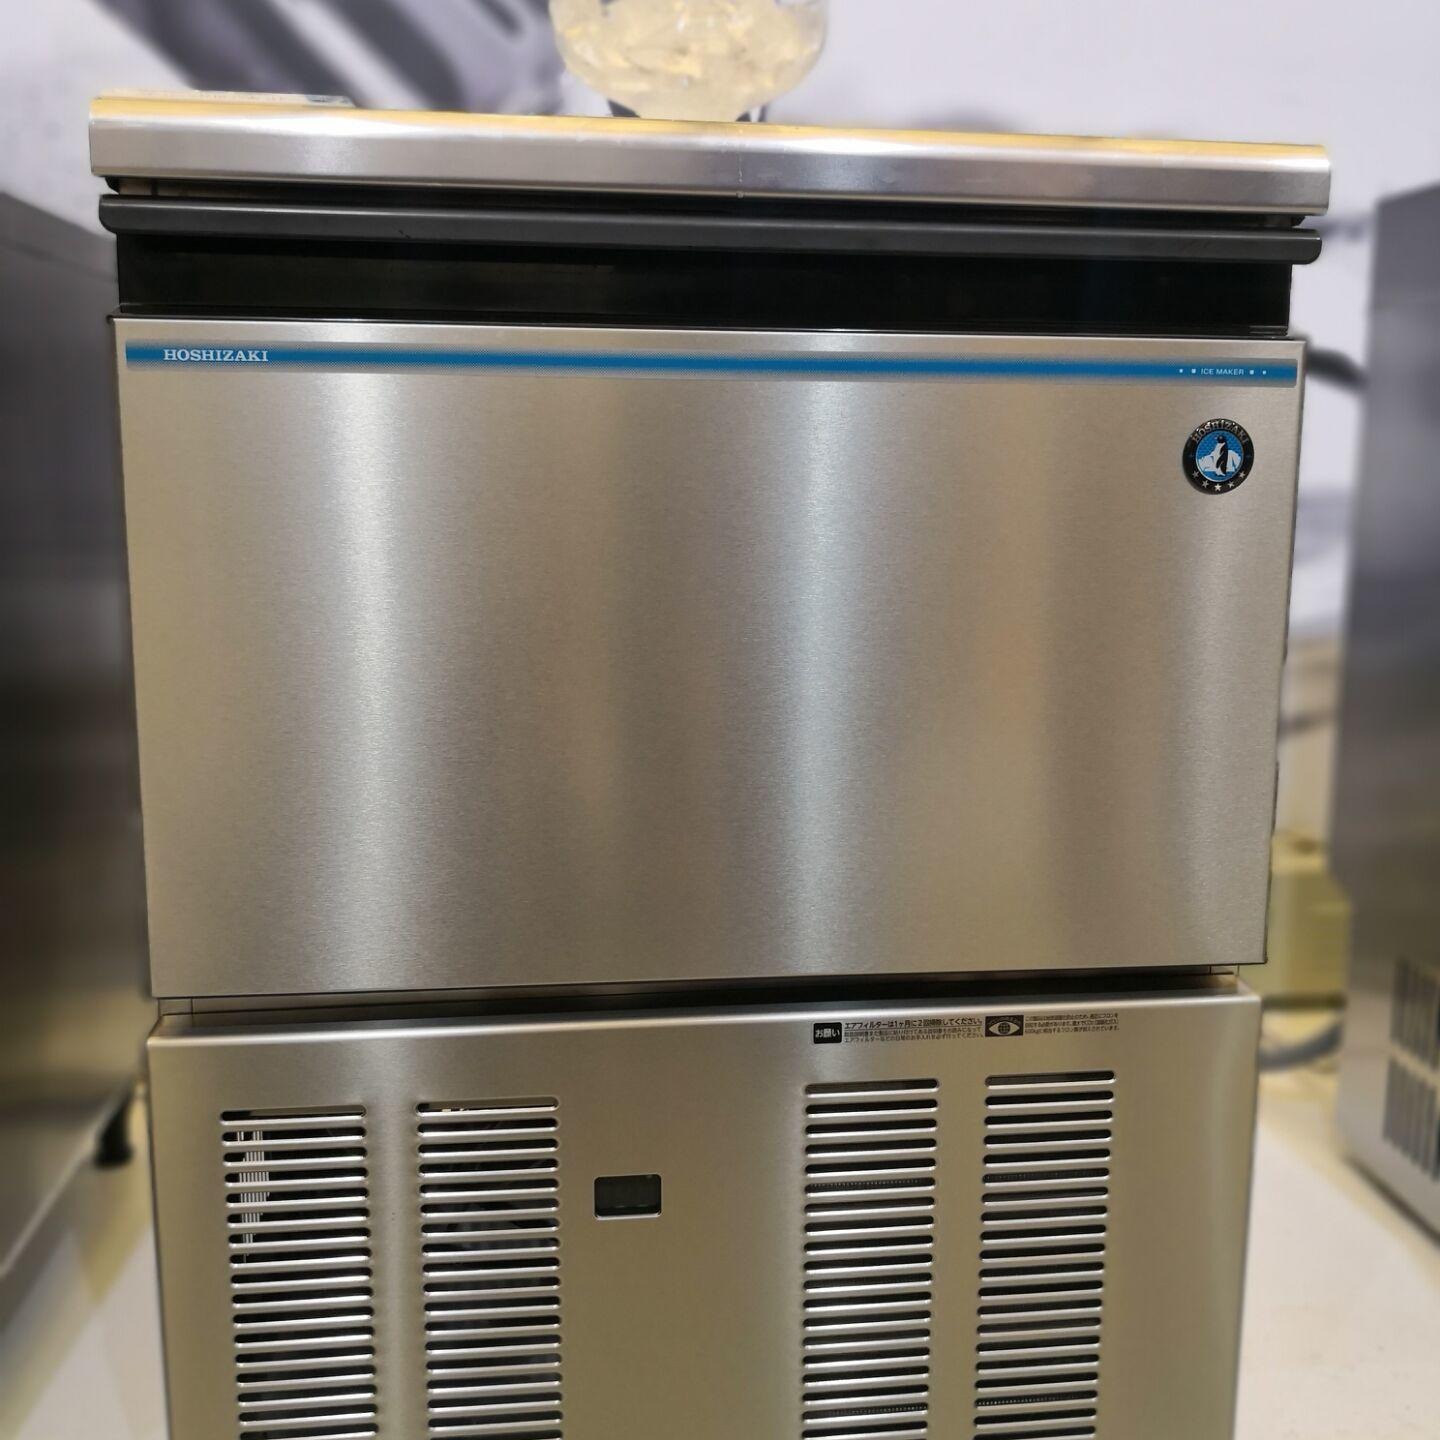 星崎IM-55M-1-Q制冰机 商用圆球型制冰机 酒吧一体式制冰机